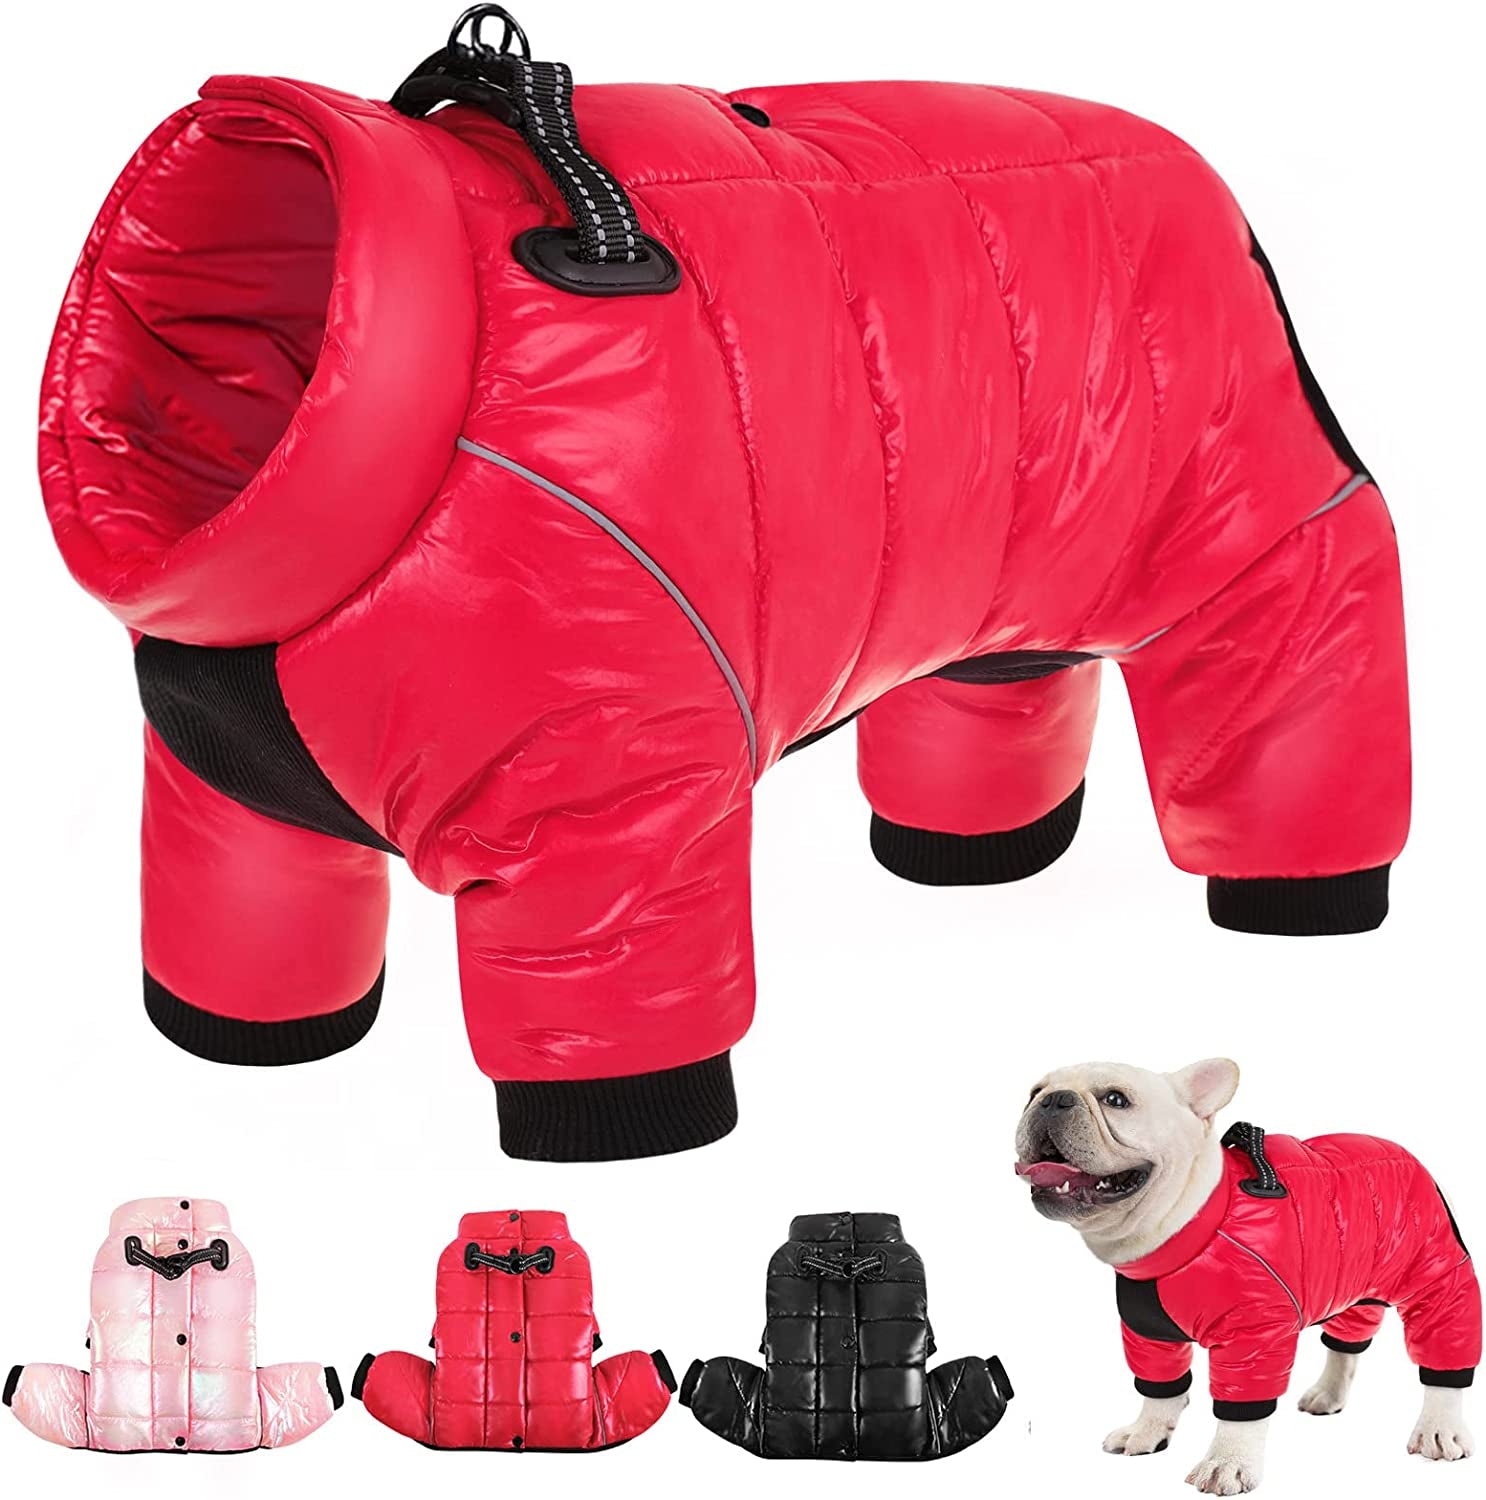 AOFITEE Dog Coat, Waterproof Dog Jacket for Winter, Warm Fullbody